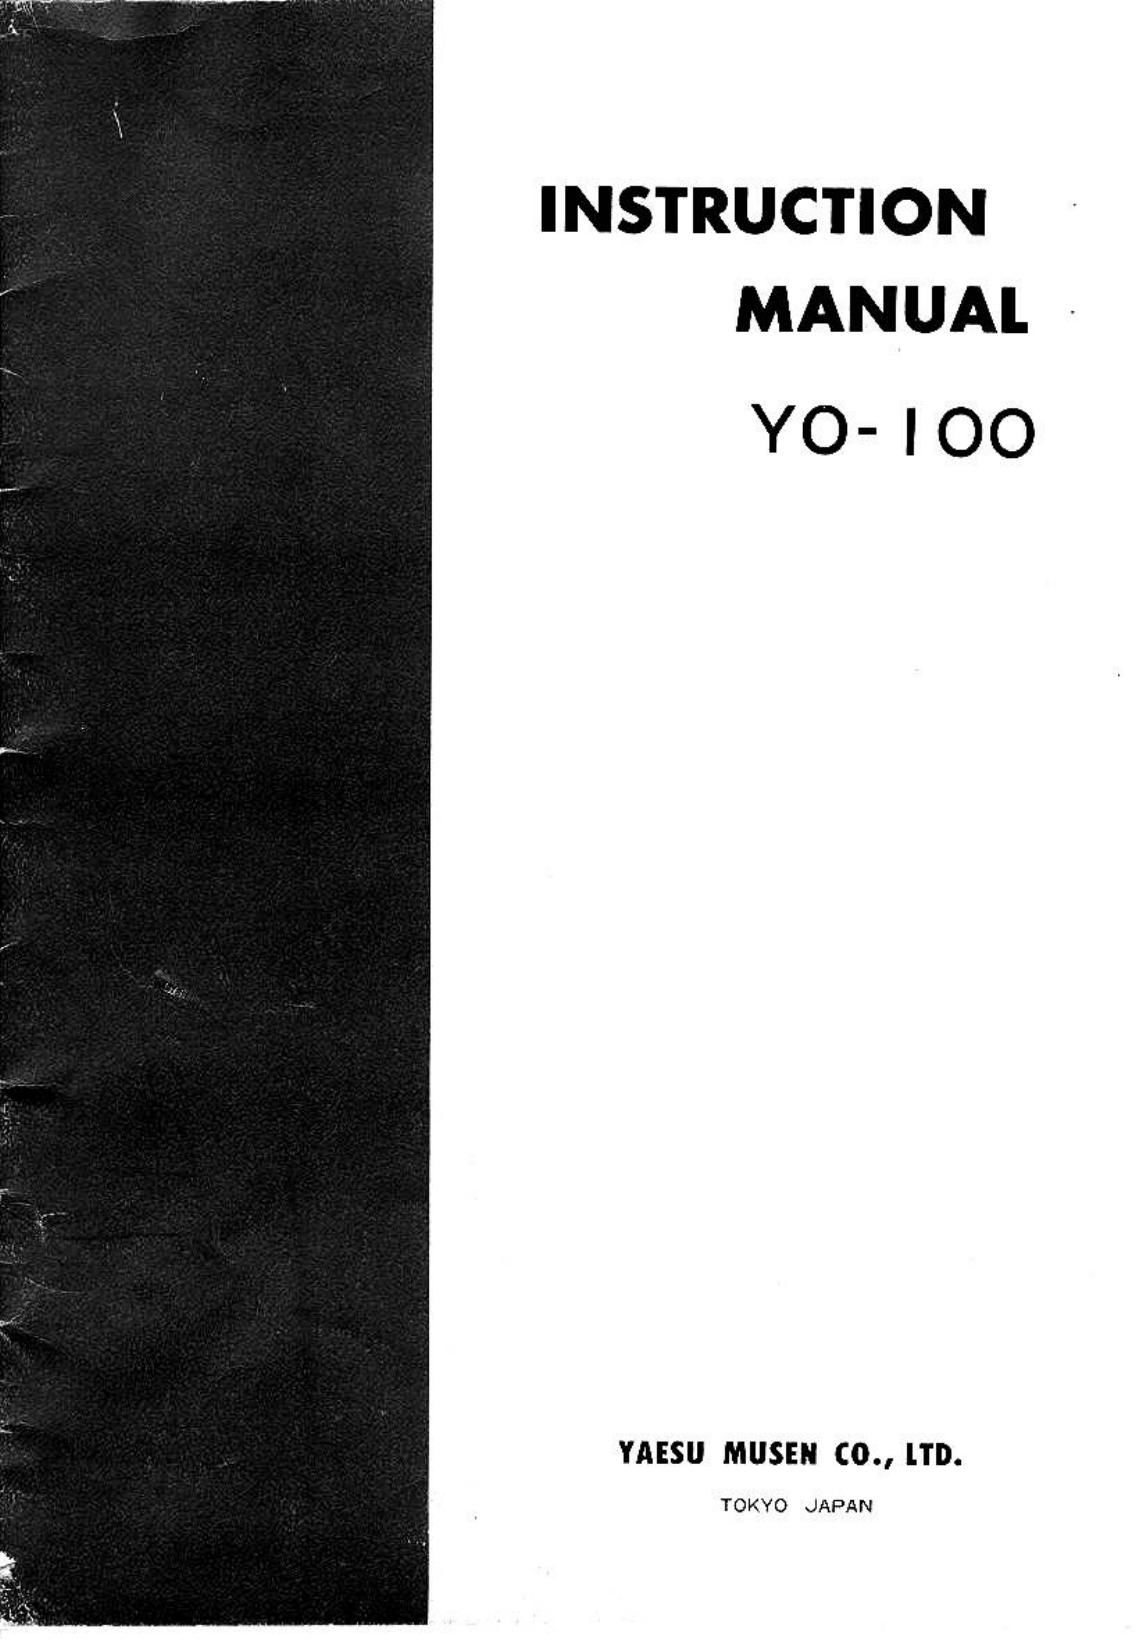 yaesu yo 100 owners manual